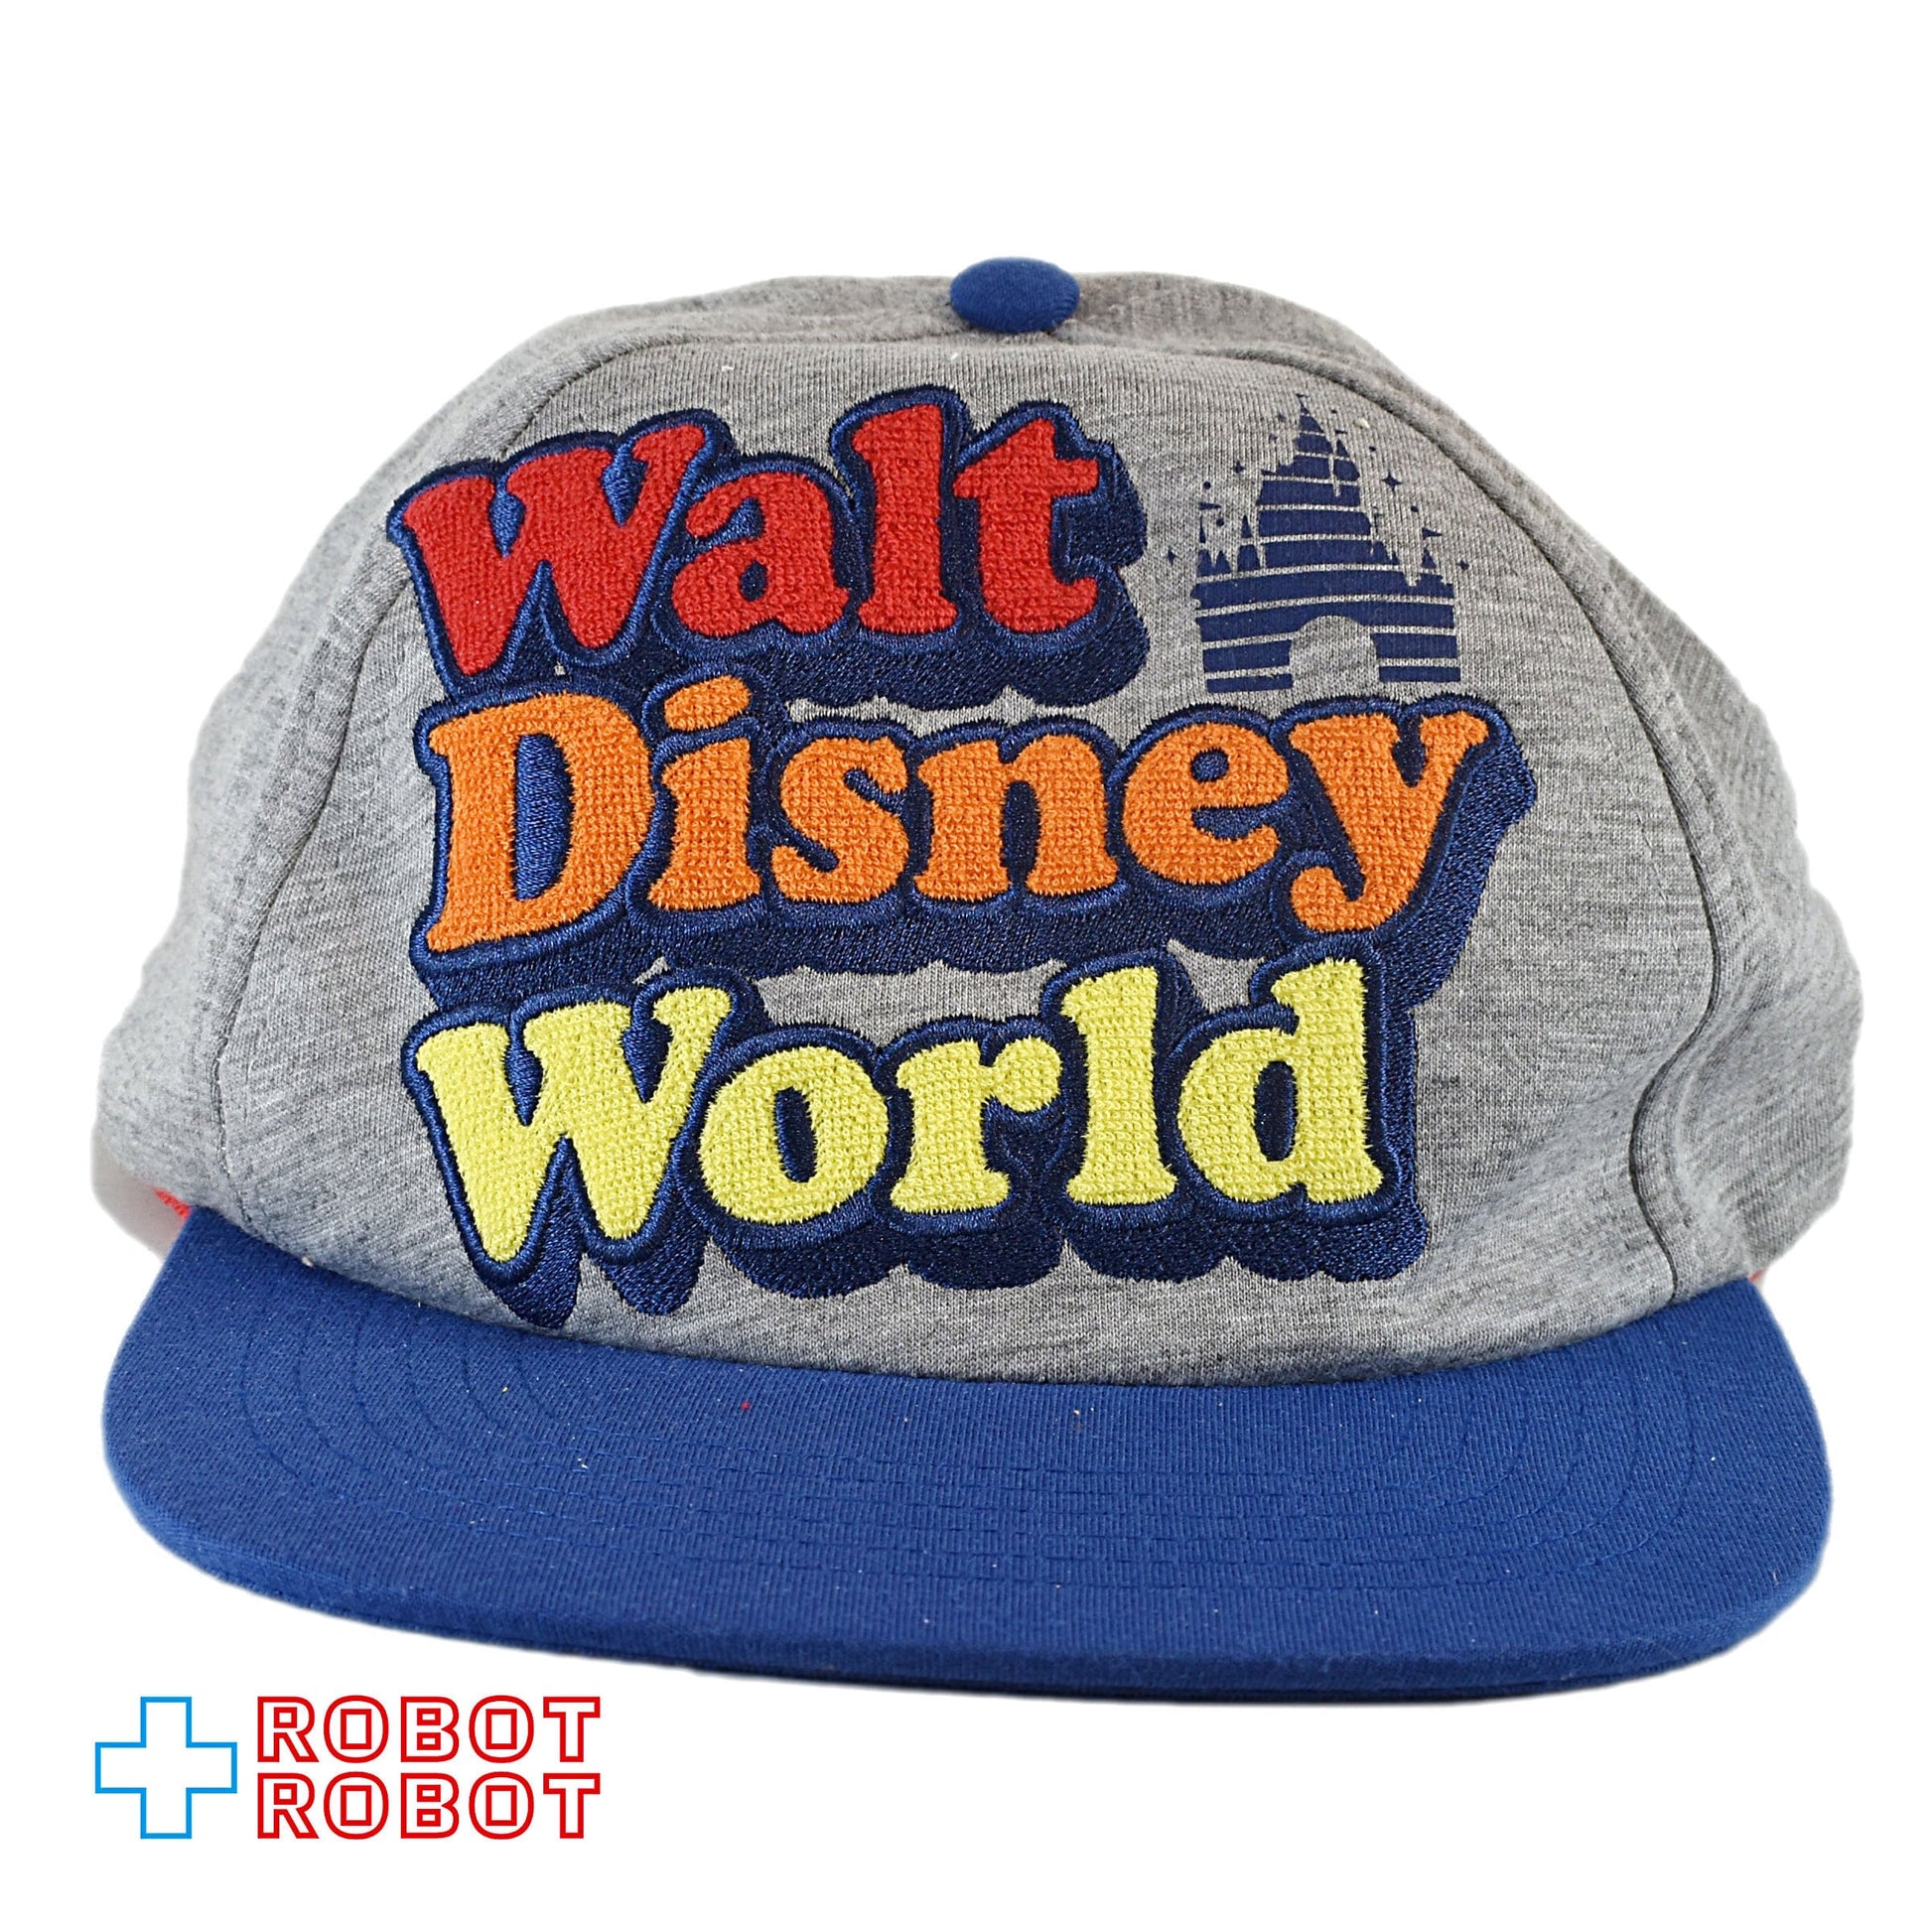 ウォルト・ディズニー・ワールド レトロロゴ 1971 野球帽 帽子 フリーサイズ